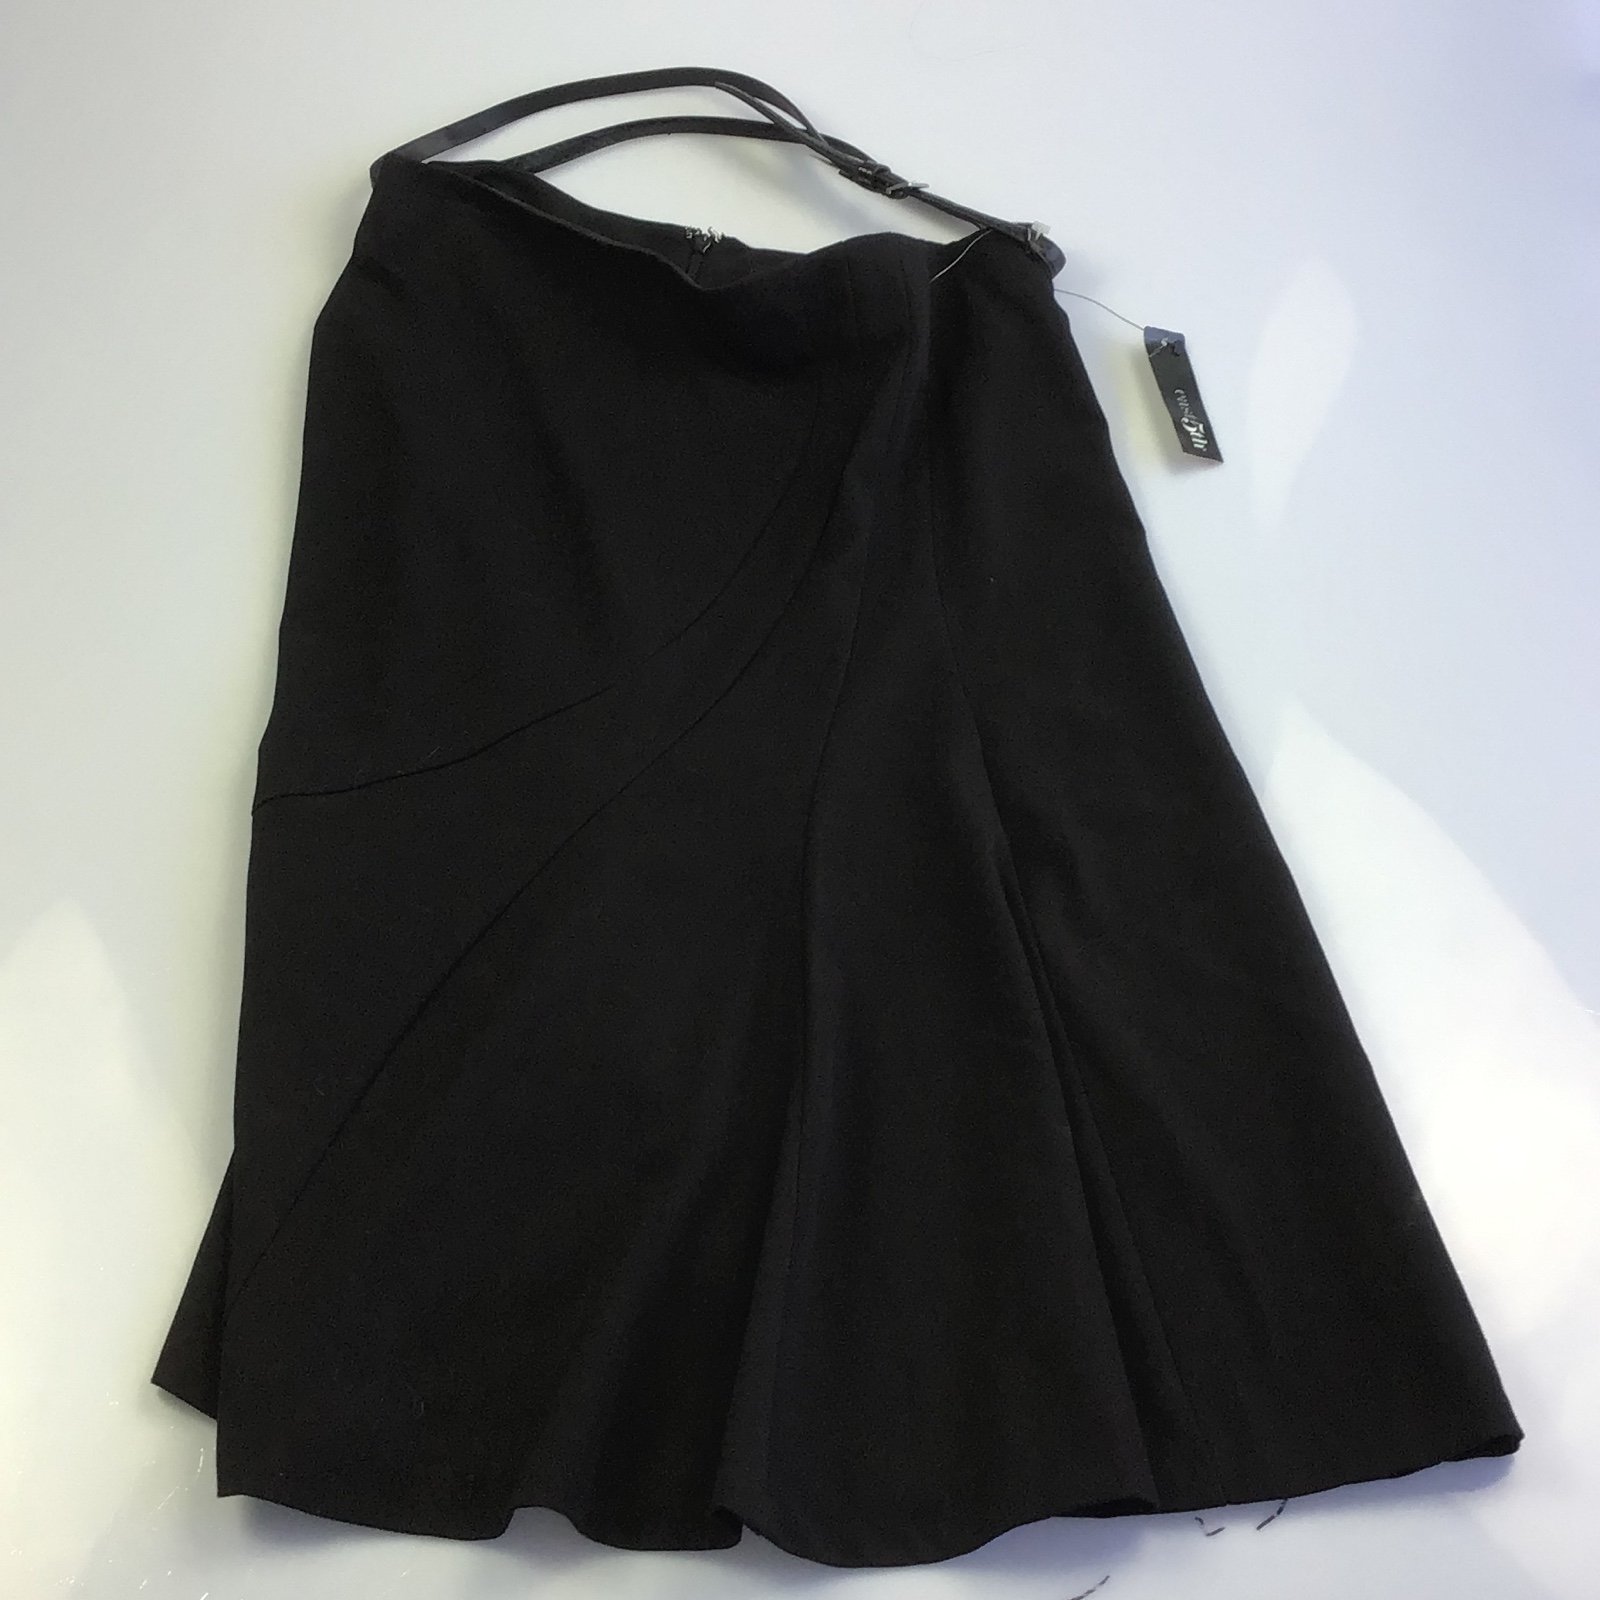 Fashion East 5th women’s skirt black size M kvTA10mk2 Novel 